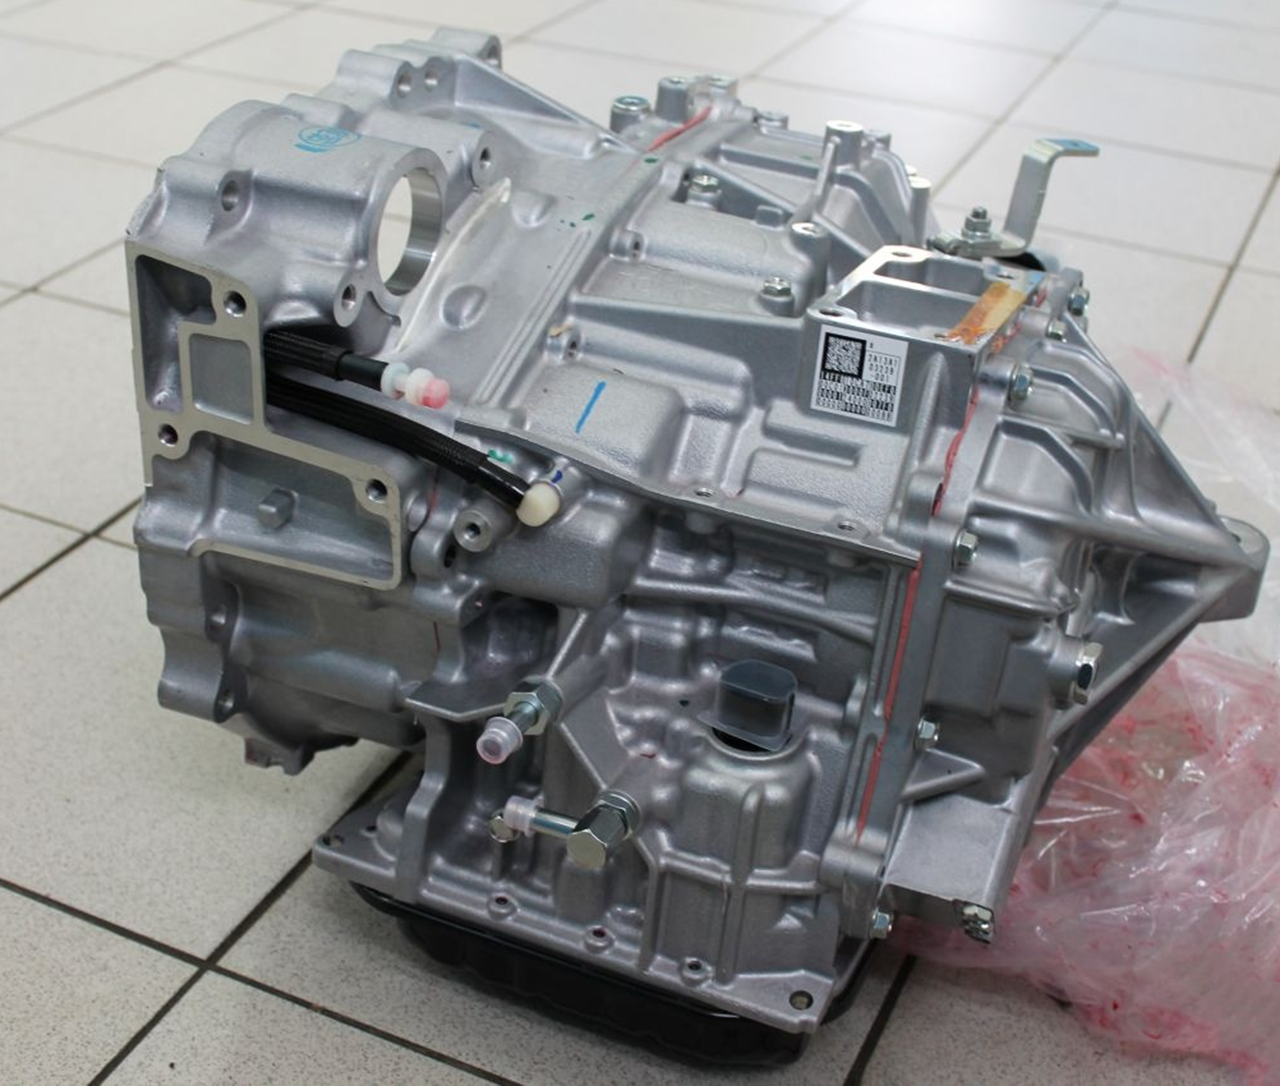 Автоматы U140/U250/U660 производства Aisin использует только Toyota (Lexus). Если игнорировать проявления основных поломок агрегатов (рывки при переключениях), то это приведет к сгоранию пакетов фрикционов и более дорогостоящему ремонту.